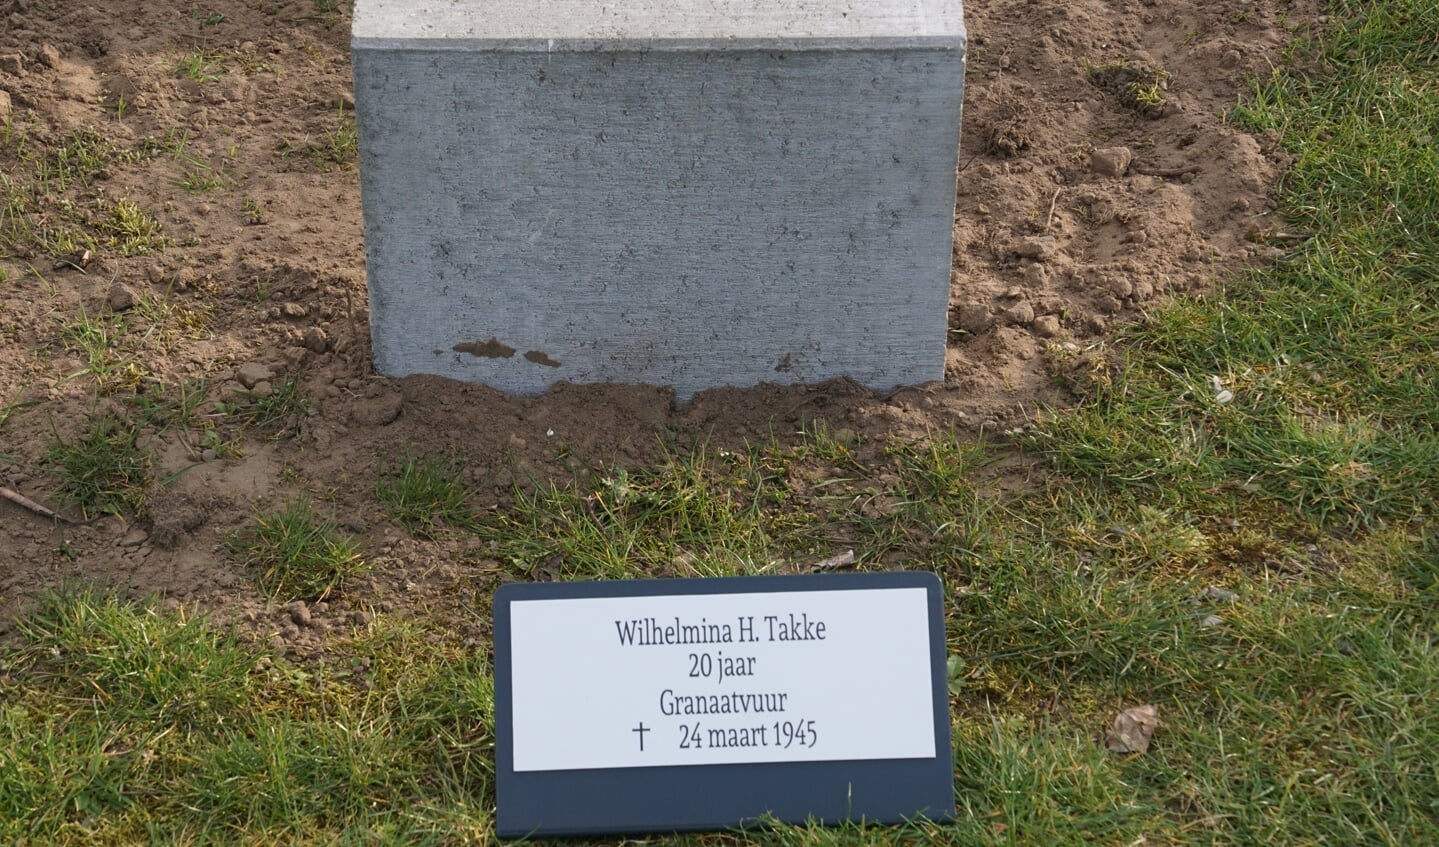 Wilhelmina H. Takke, 20, granaatvuur